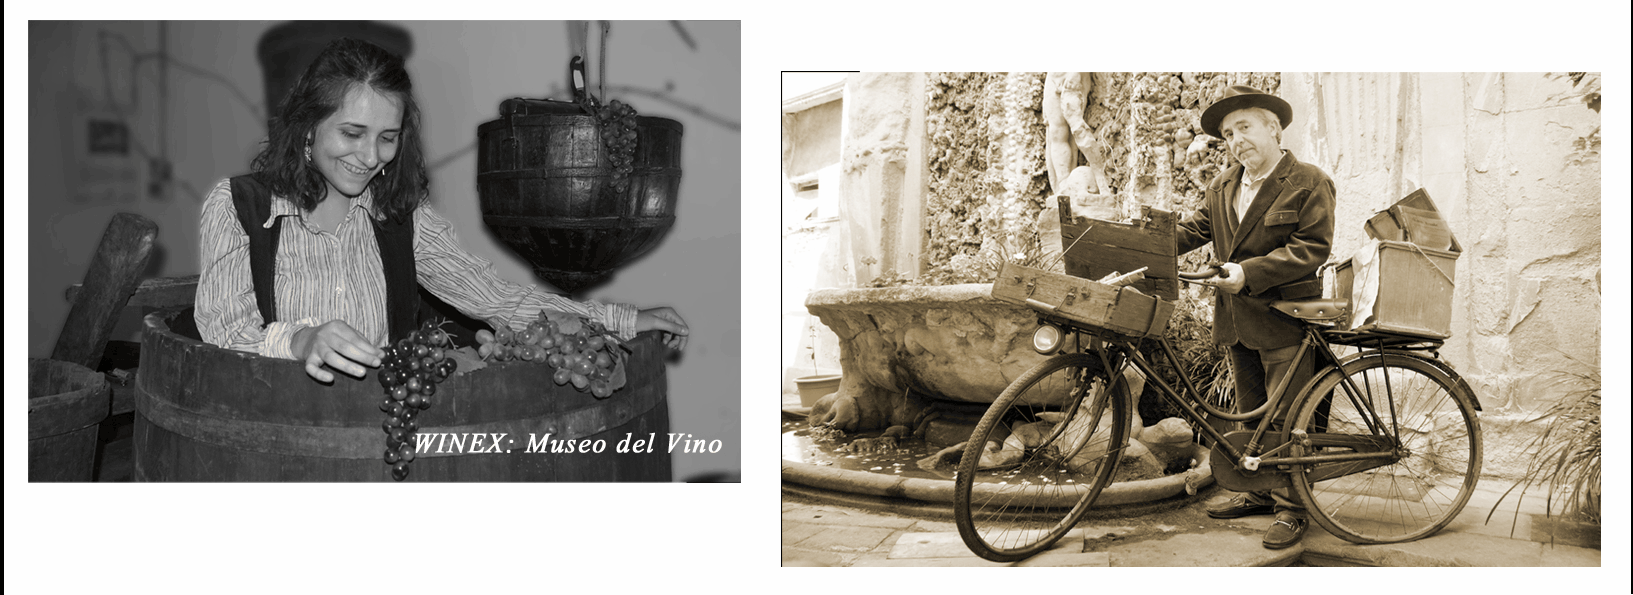 Winex, Museo del Vino, Daviddino, Cucina etrusca san miniato buchette del vino